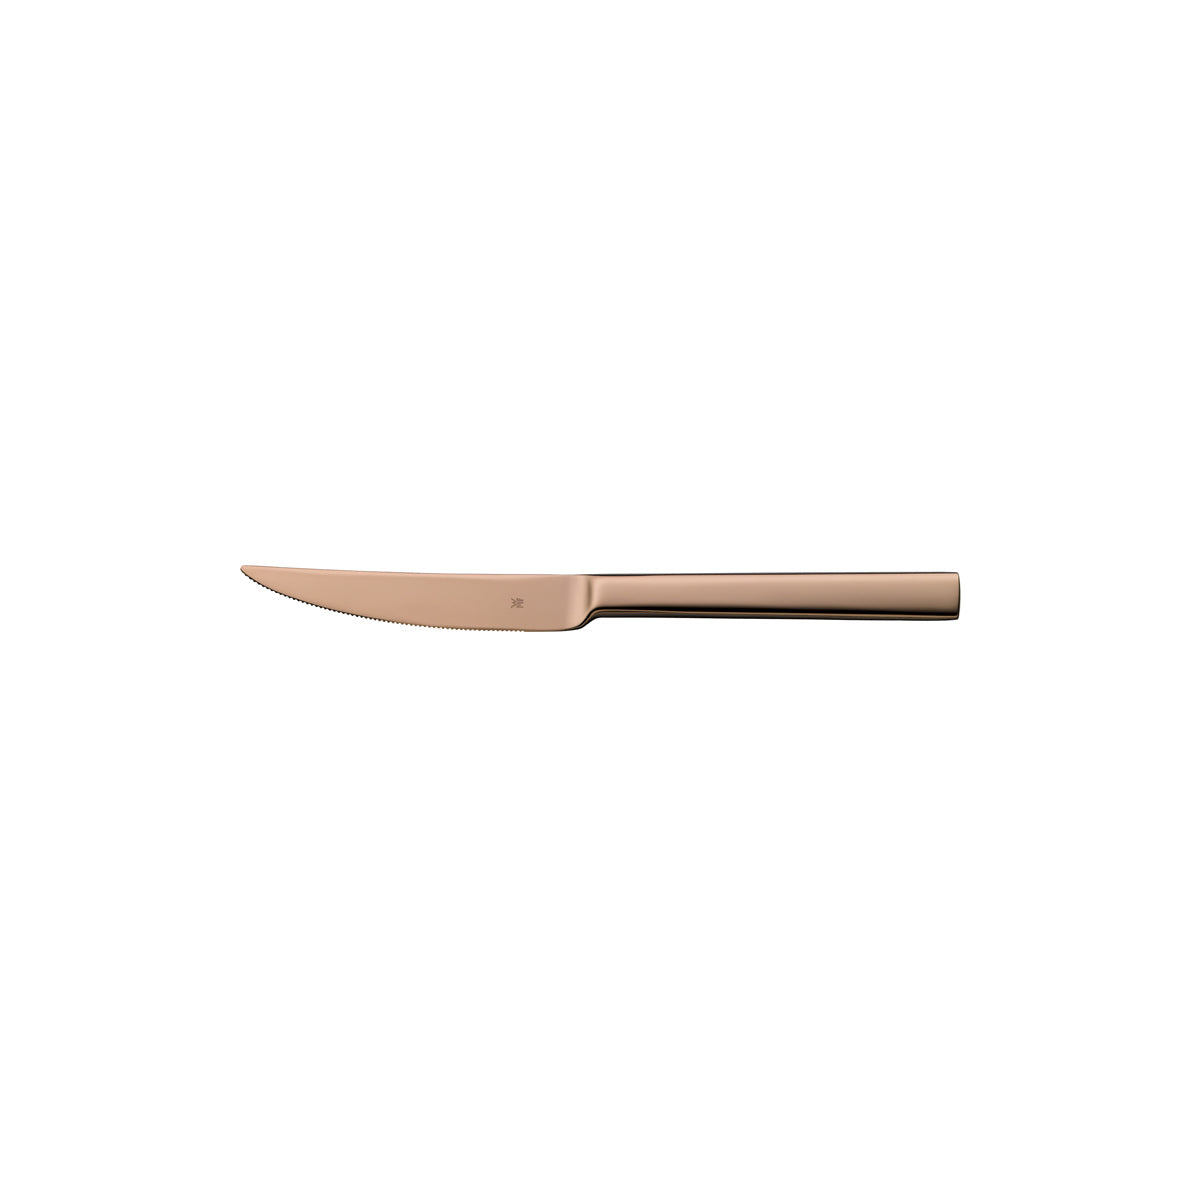 59.5378.8100 WMF Unic Steak Knife Copper Tomkin Australia Hospitality Supplies